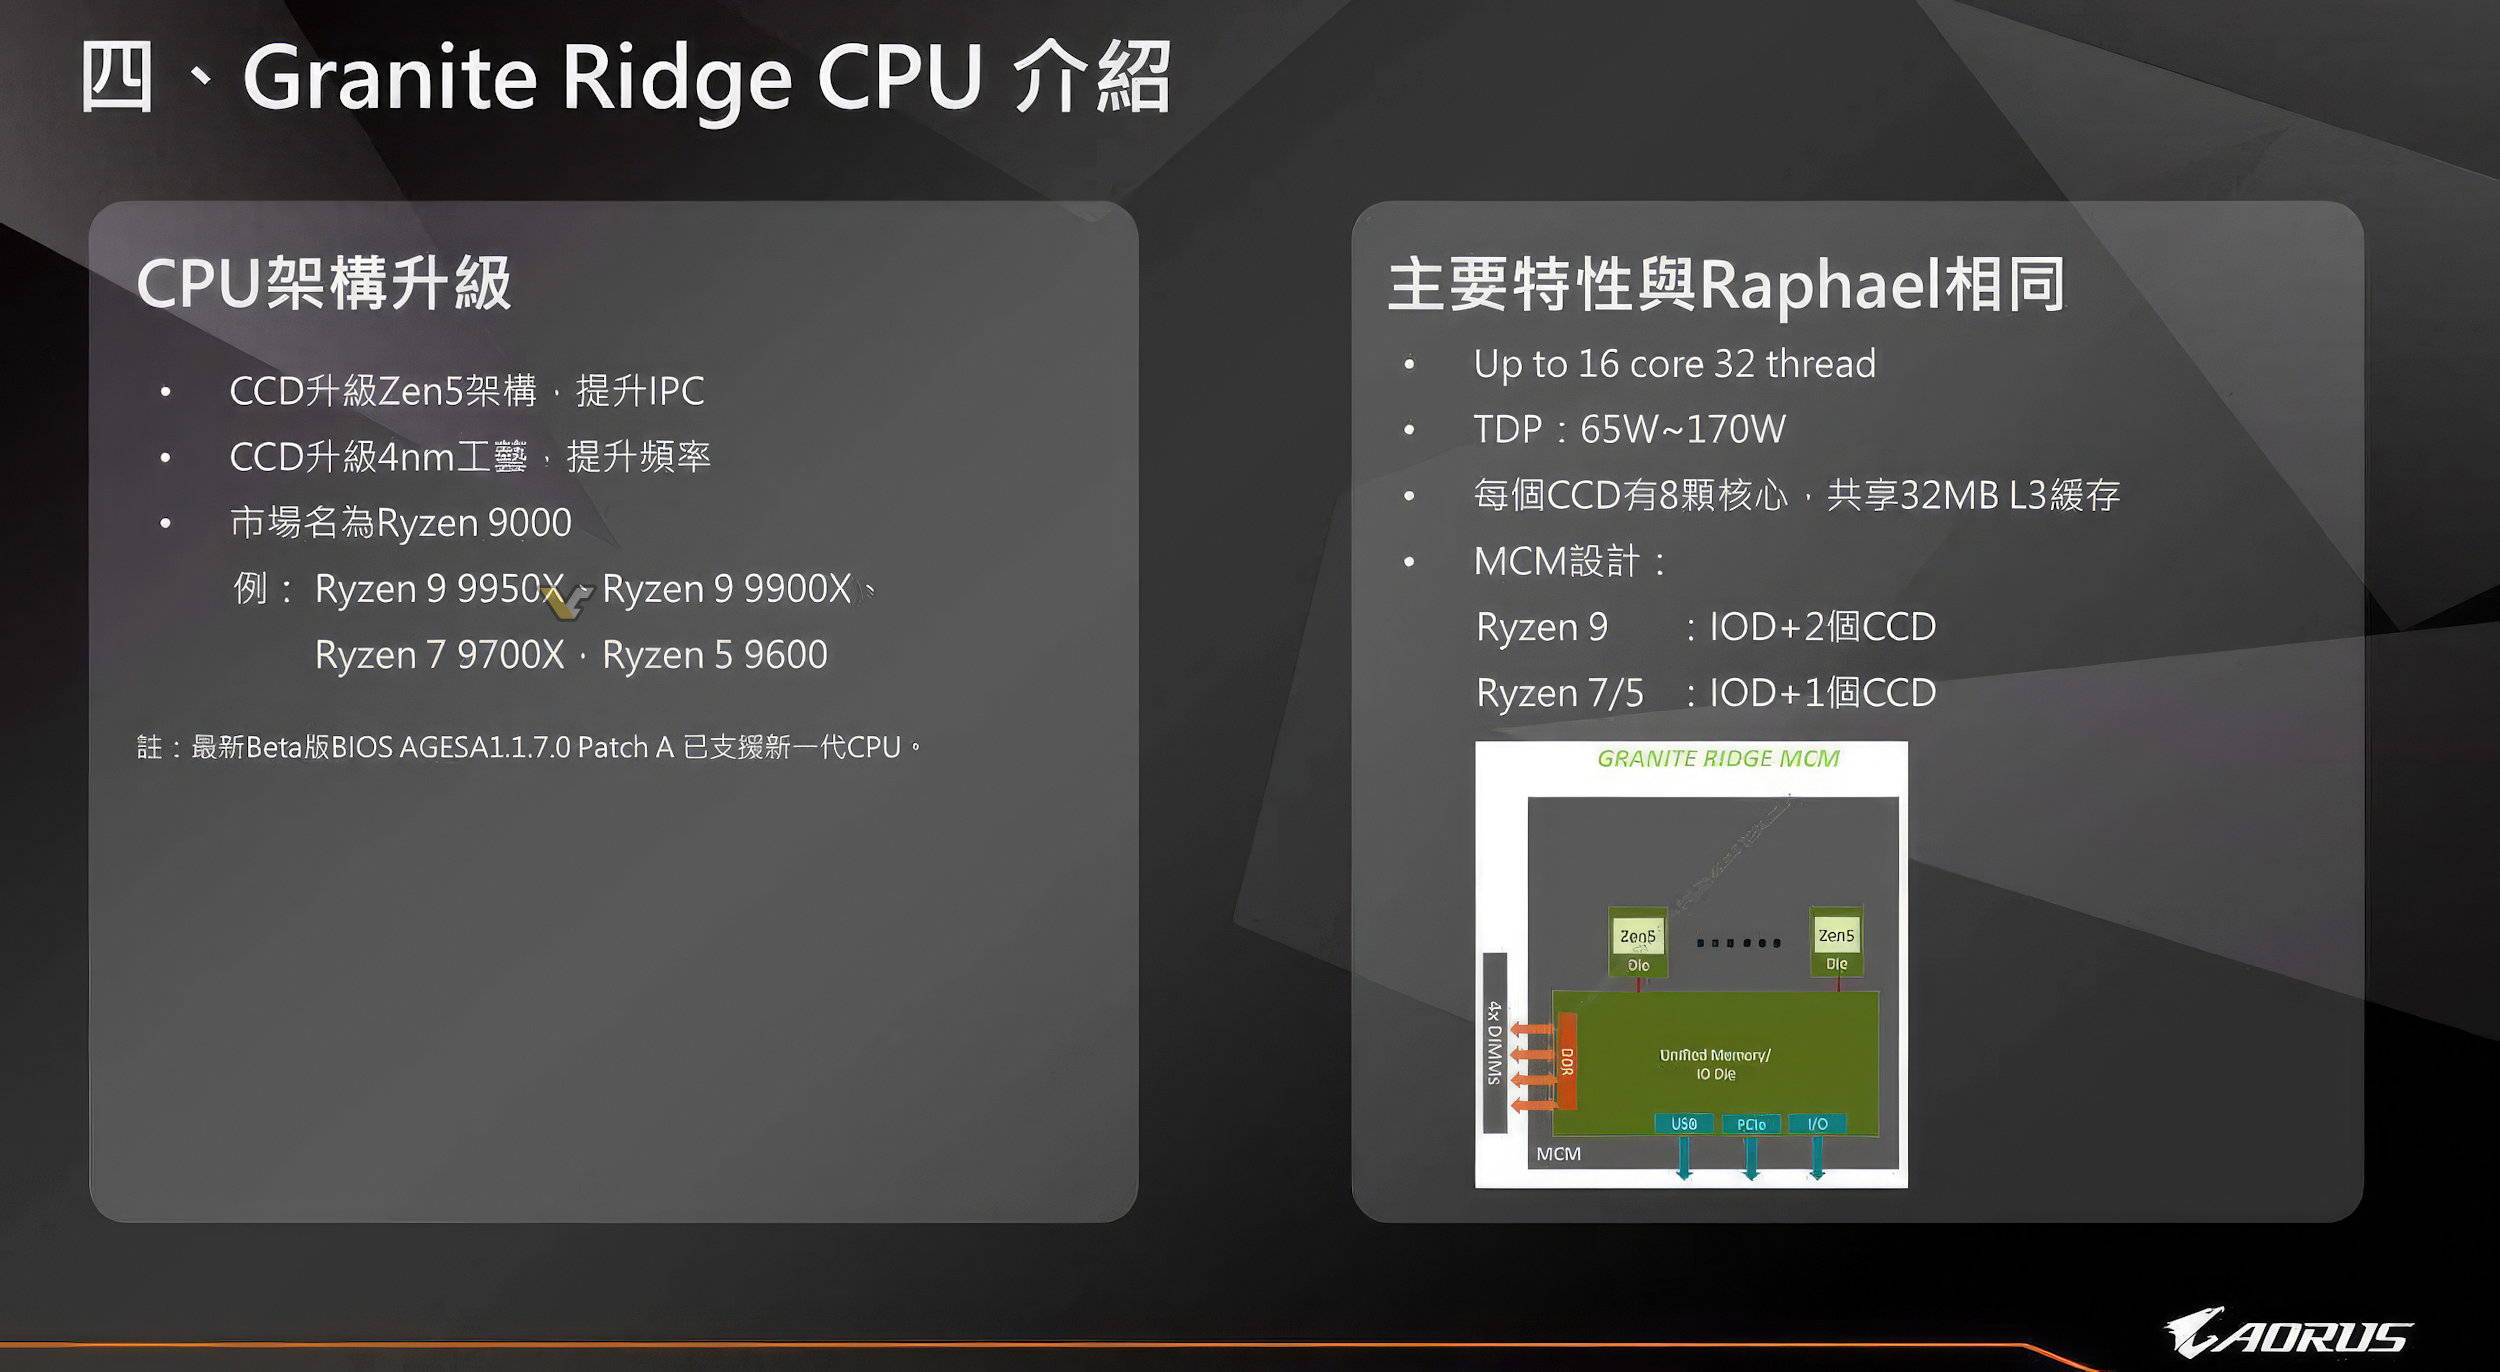 اطلاعات فاش شده از مادربرد AORUS X870 پردازنده پرچمدار AMD Ryzen 9 